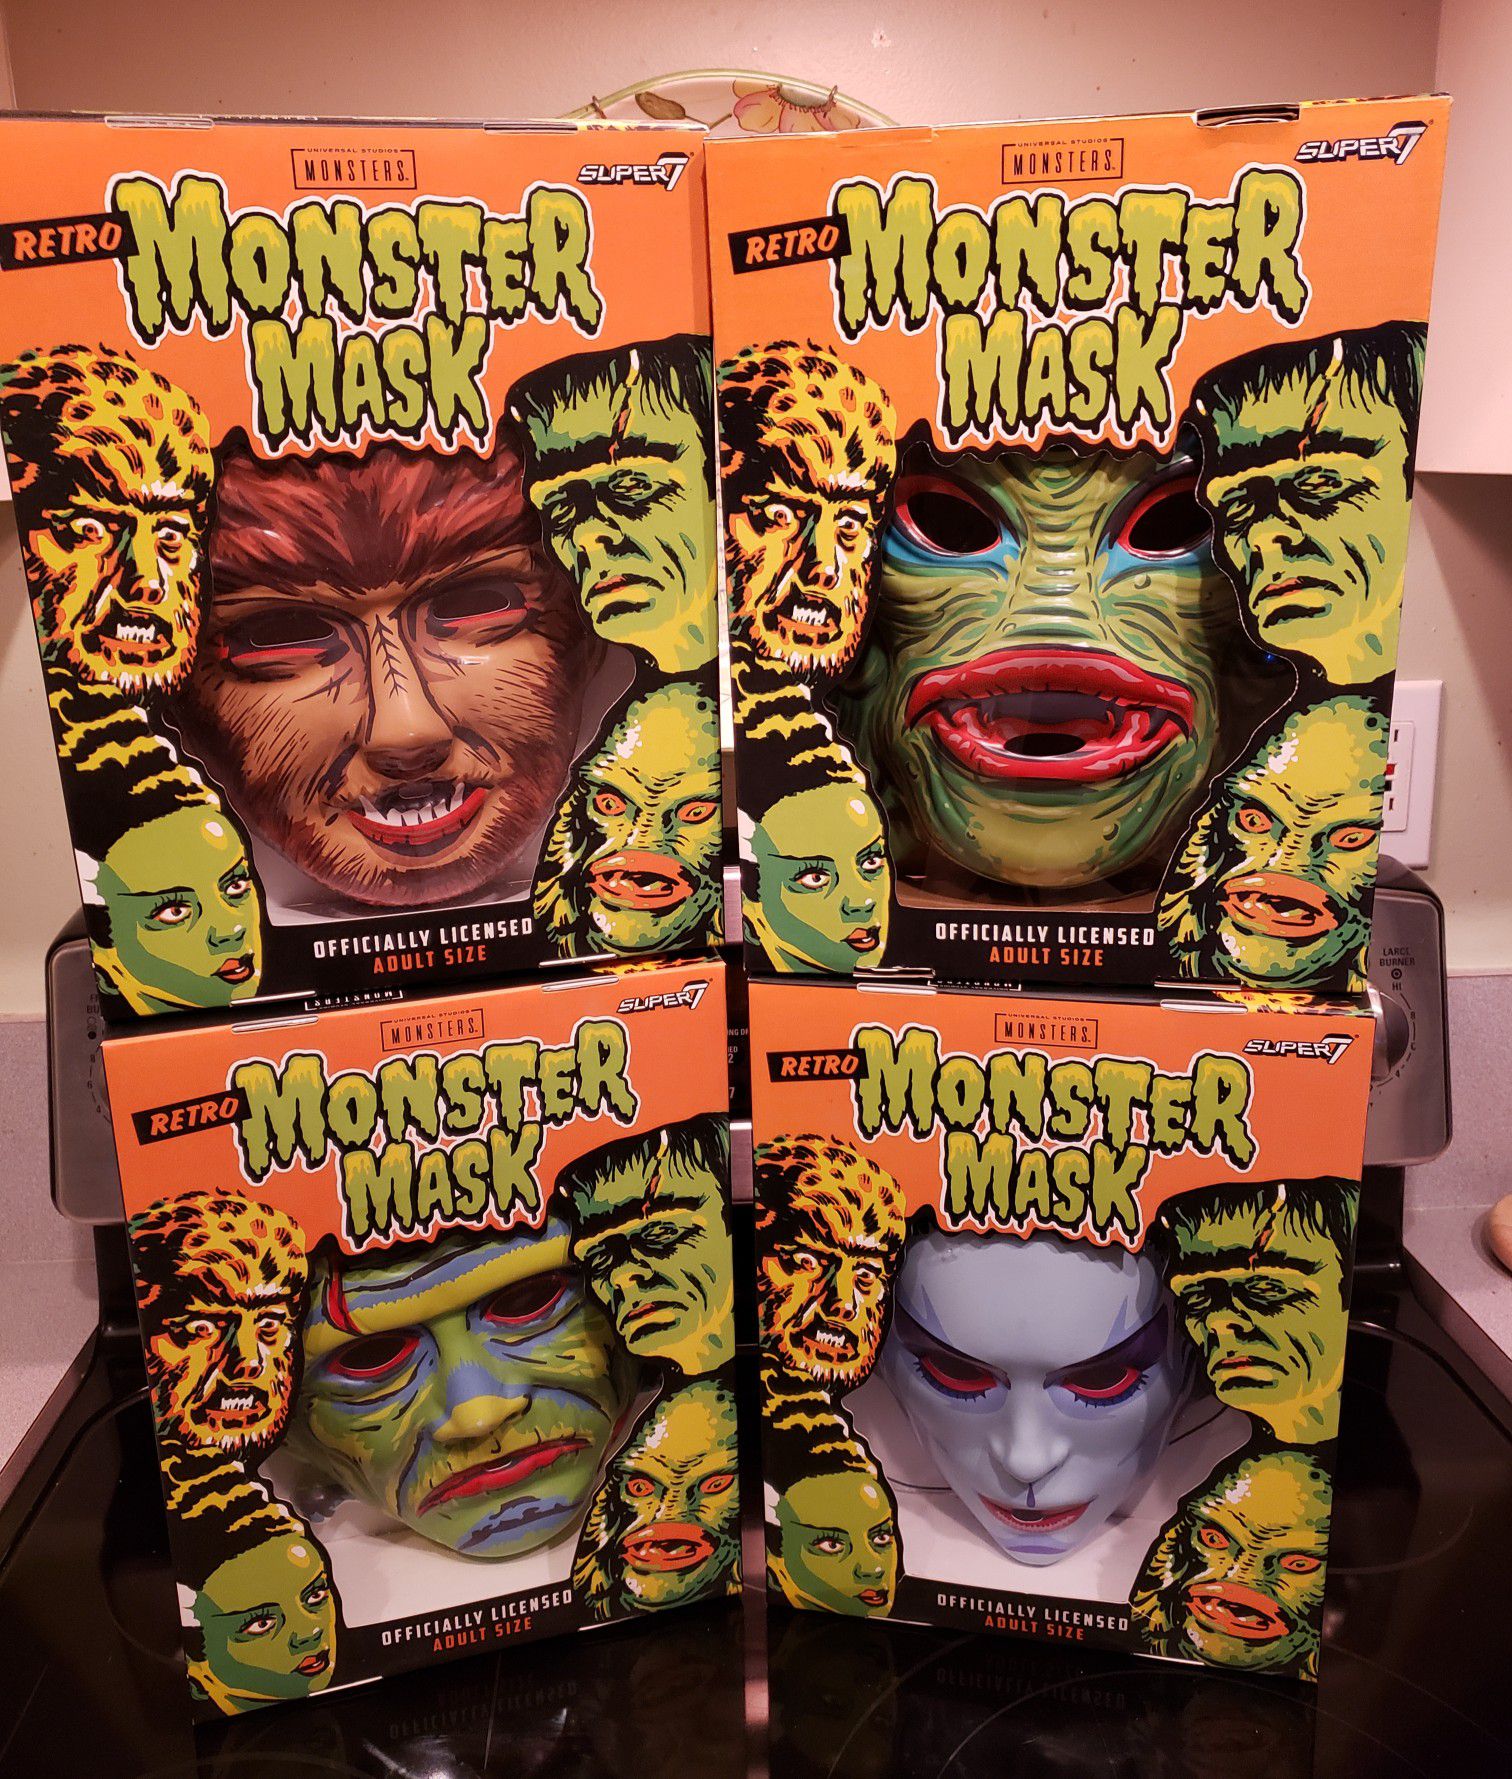 Universal Movie Monster masks 80s retro style Frankenstein, Werewolf, Bride of Frankenstein, Creature from Black Lagoon